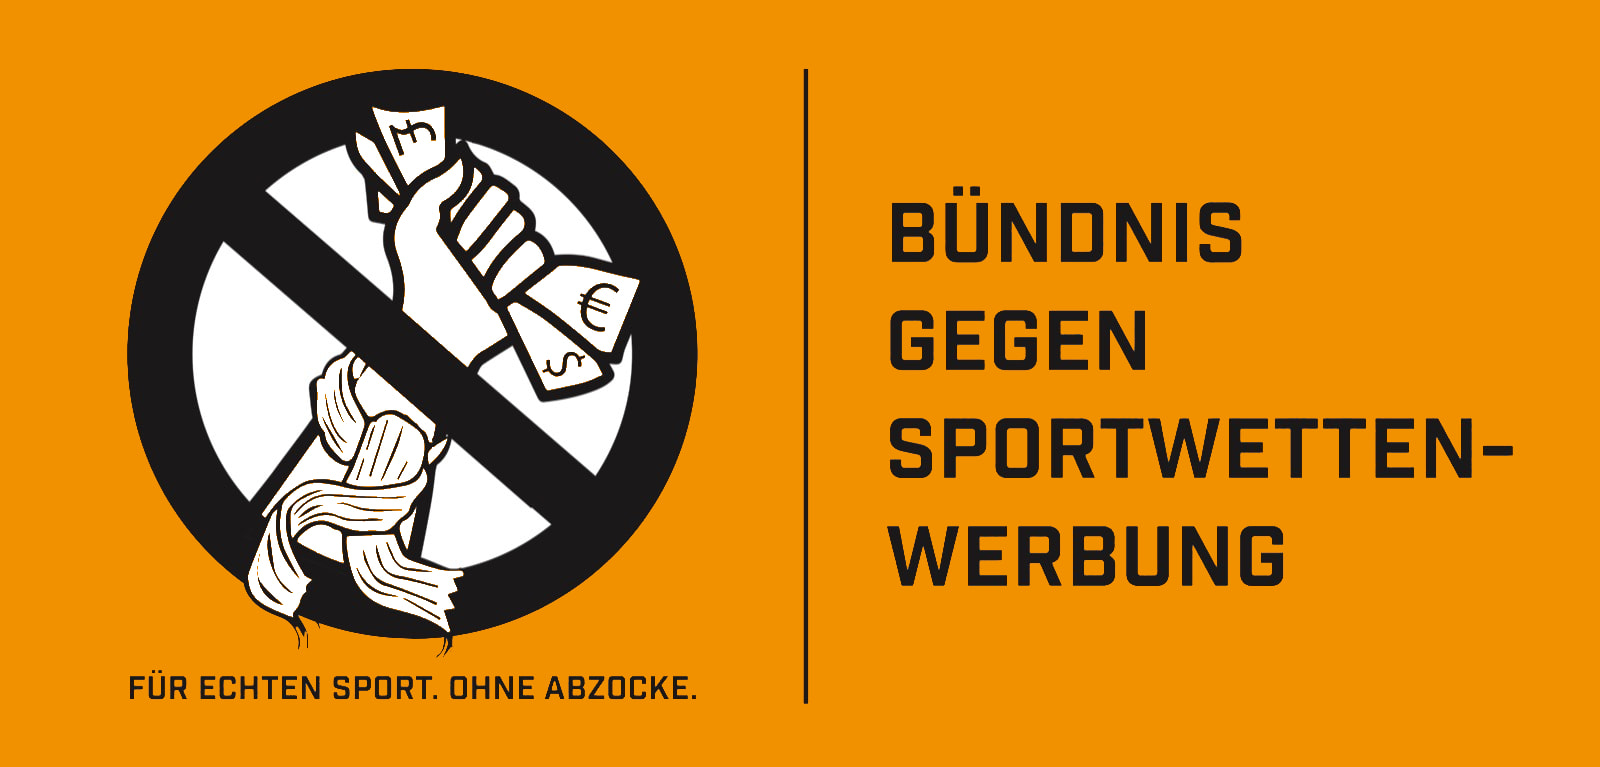 Offizielles Logo des Bündnisses gegen Sportwetten-Werbung